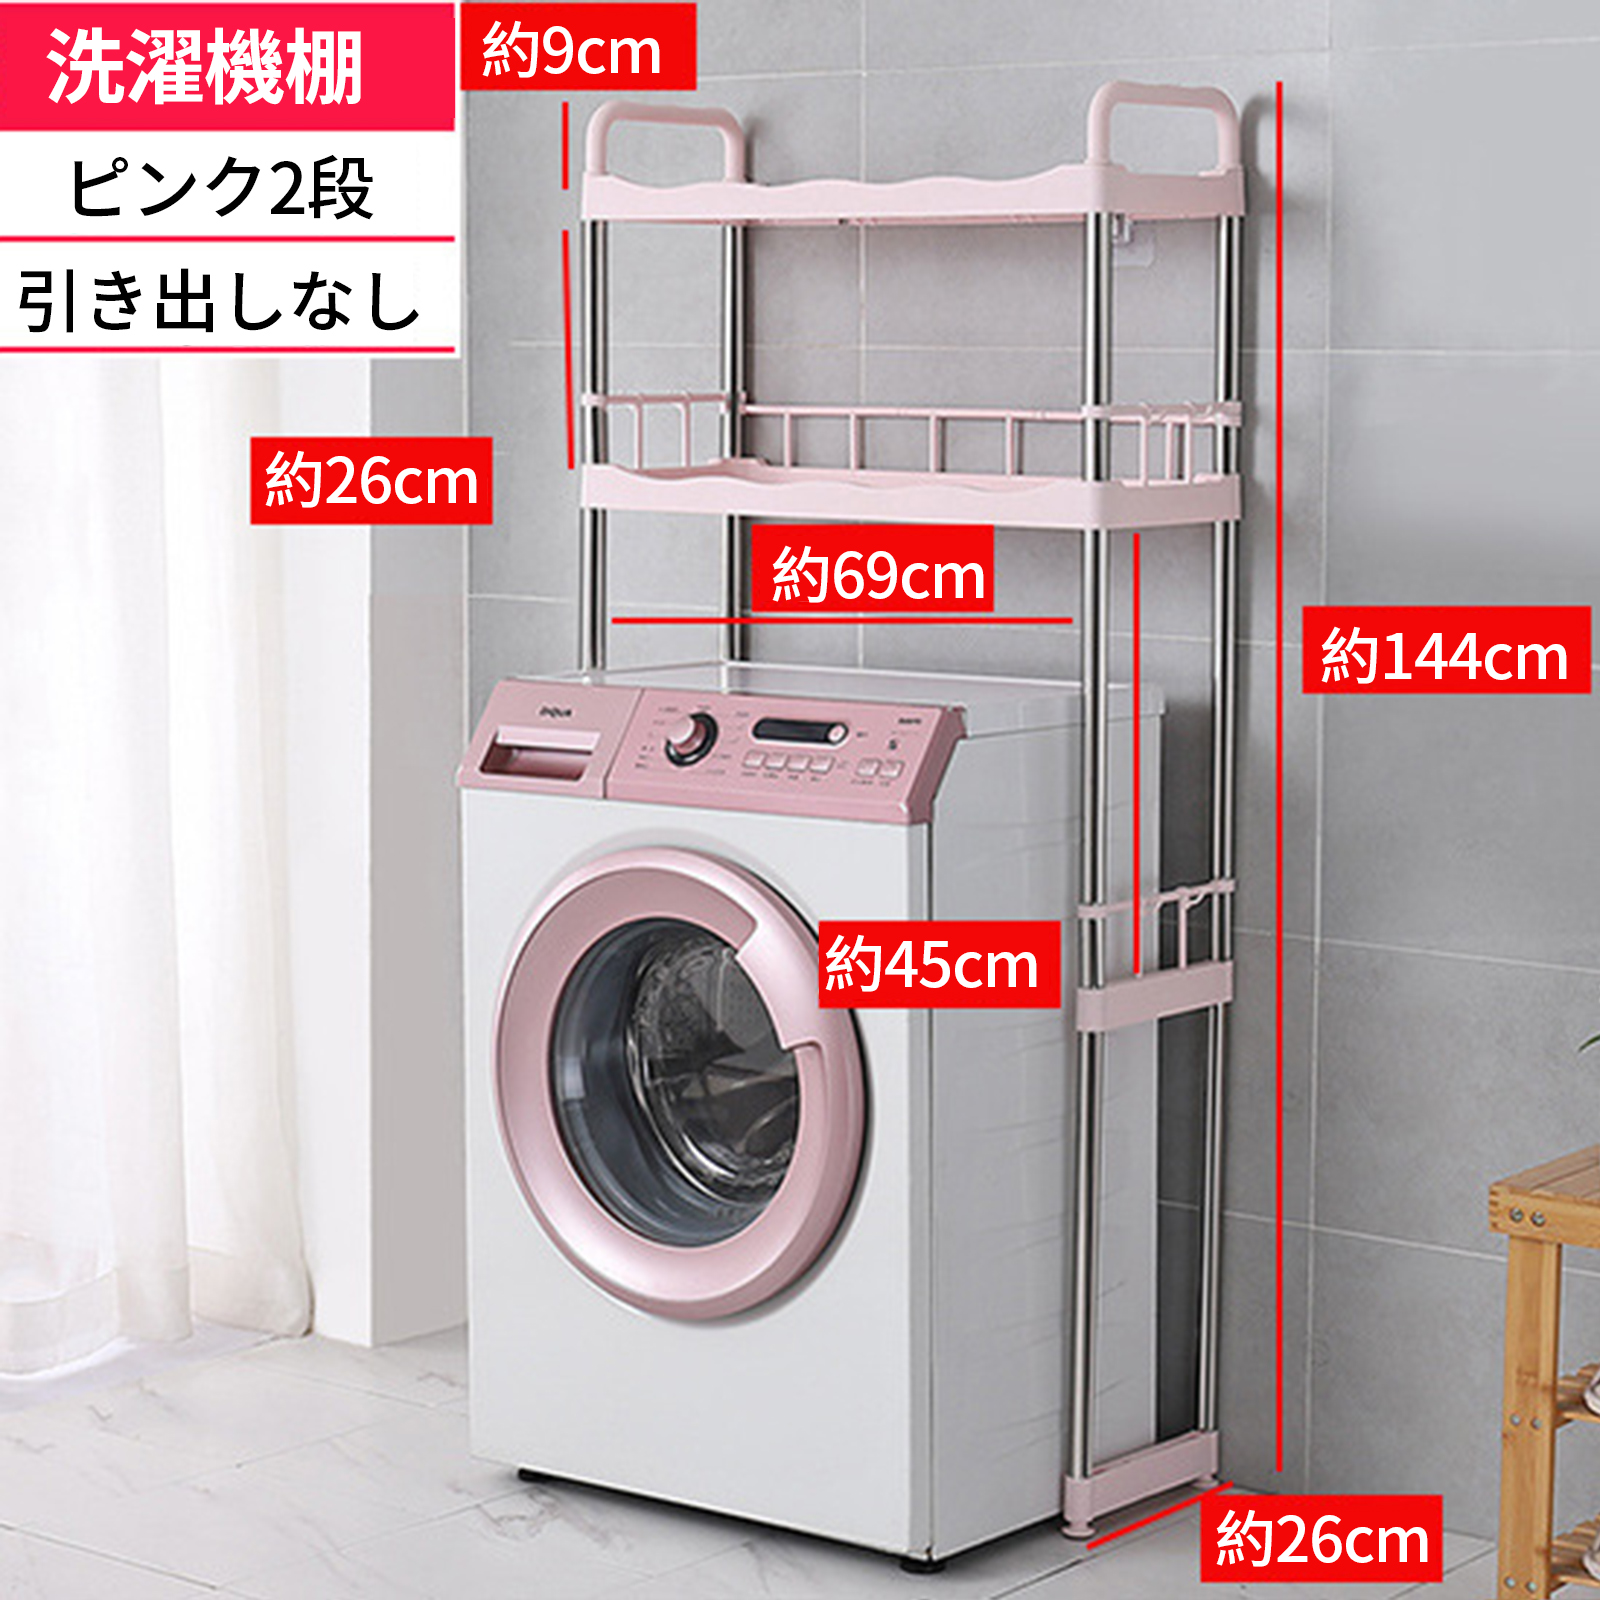 Pink washing machine rack [ without drawers ]